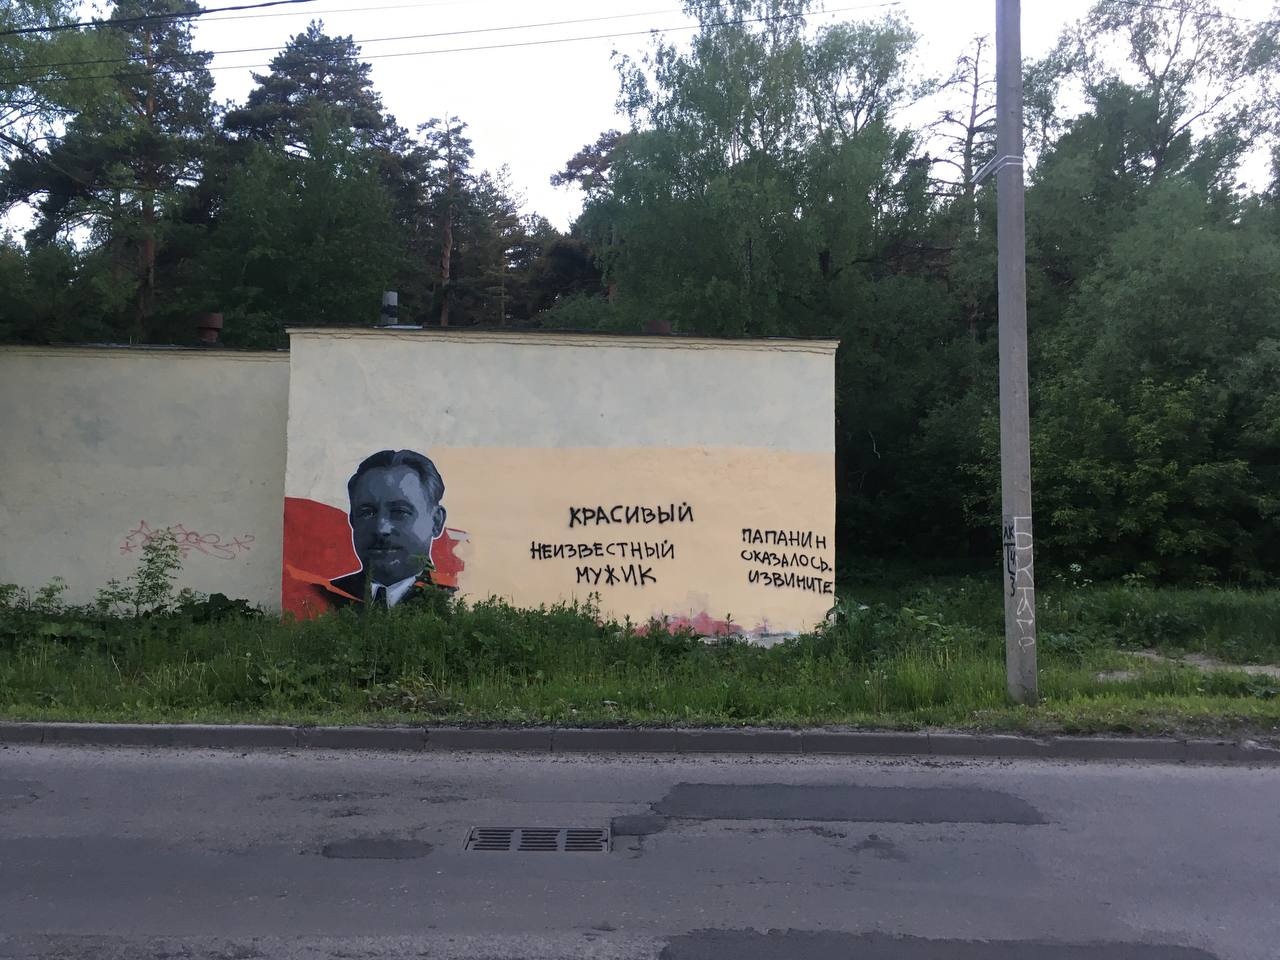 Испортивший граффити с Иваном Папаниным ярославец сам пришел в полицию